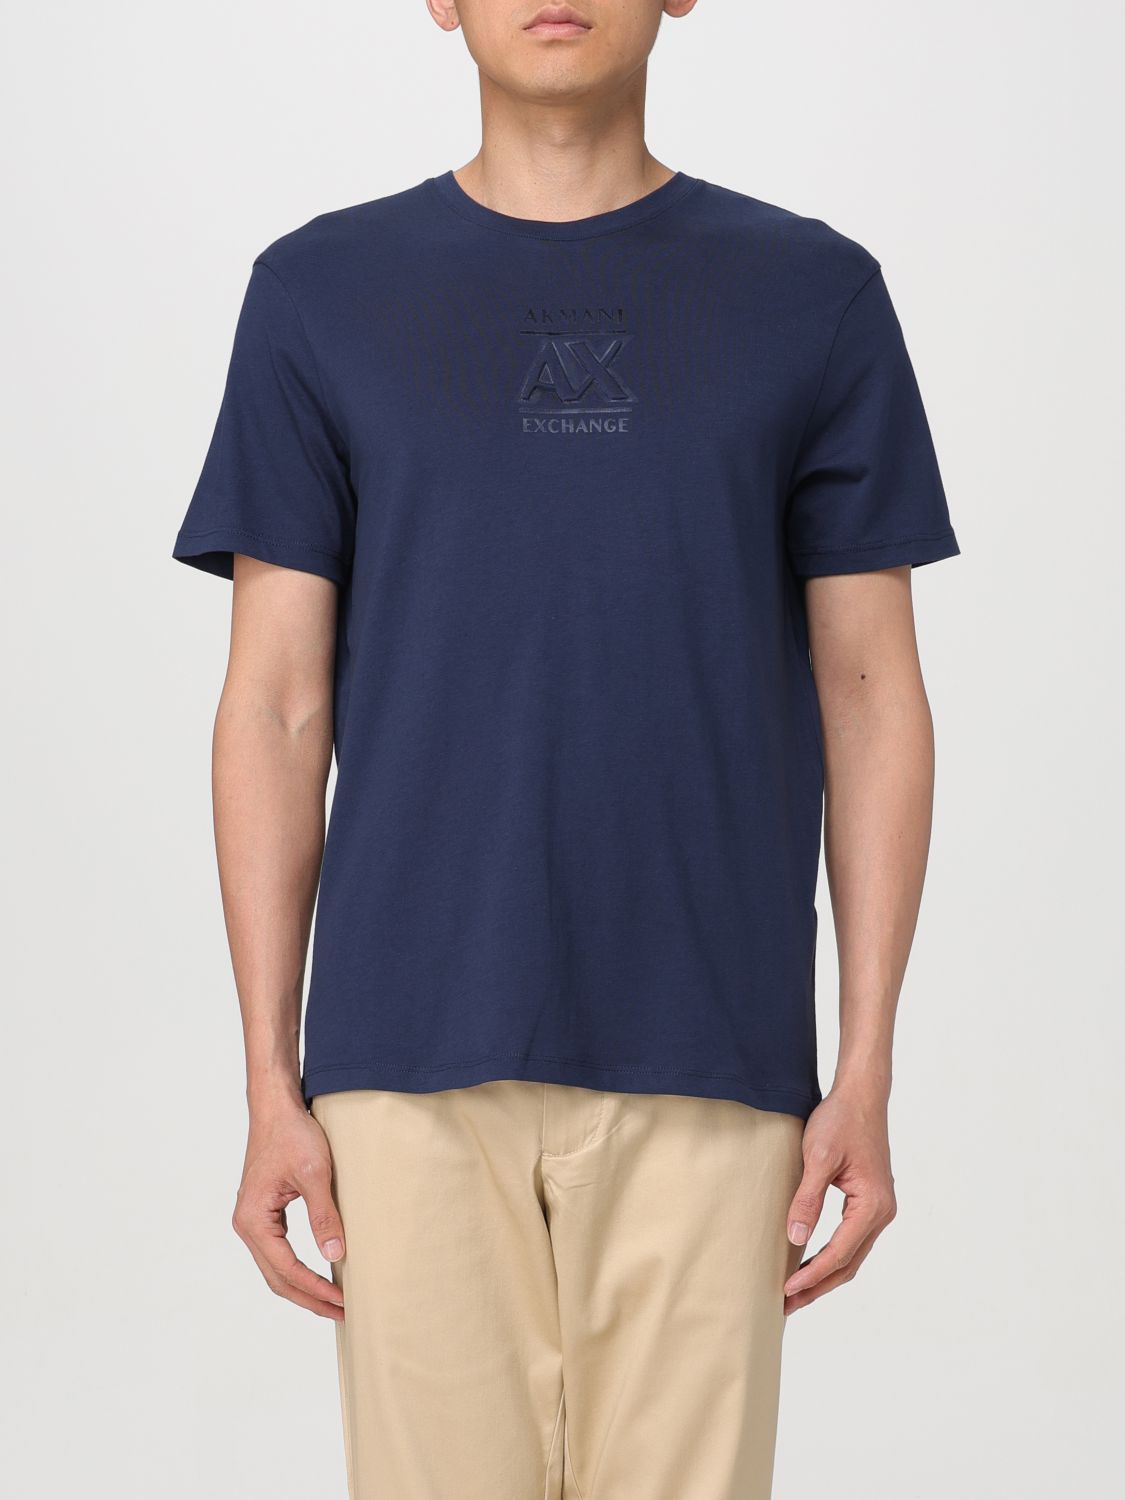 Armani Exchange T-Shirt ARMANI EXCHANGE Men color Blue